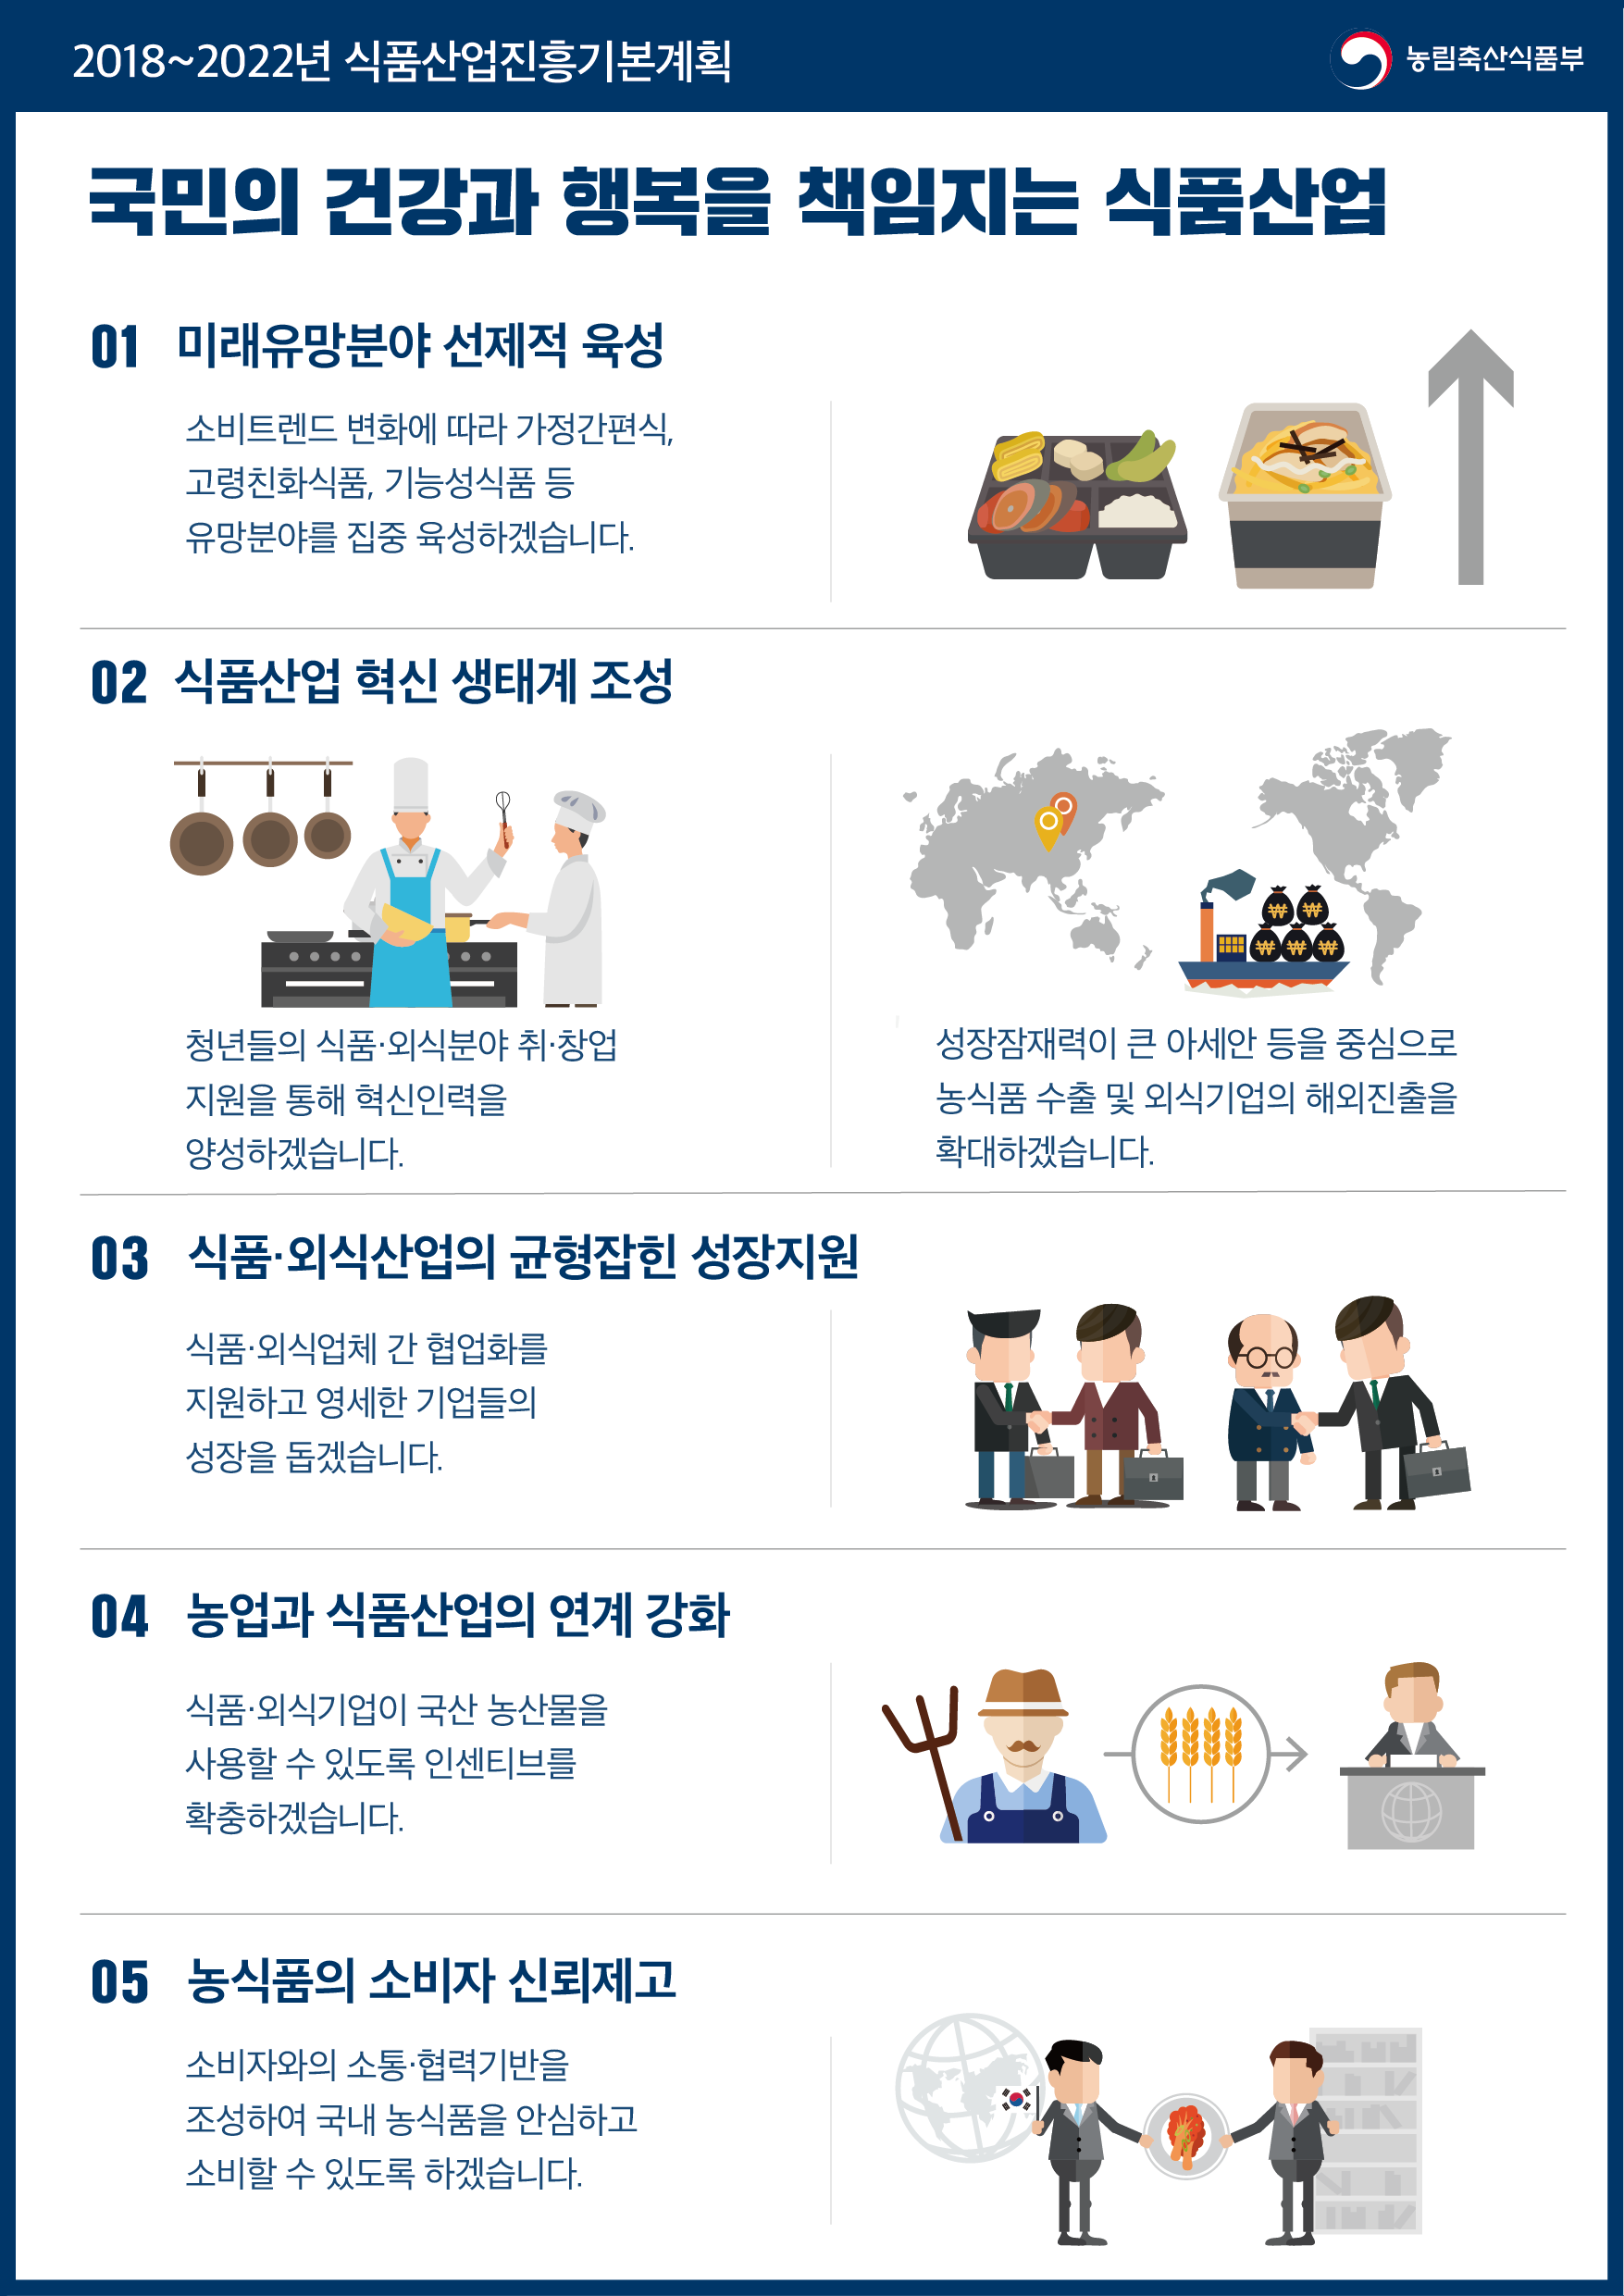 제3차 식품산업진흥기본계획 (제3차 식품산업진흥기본계획) 인포그래픽 이미지(수정).png